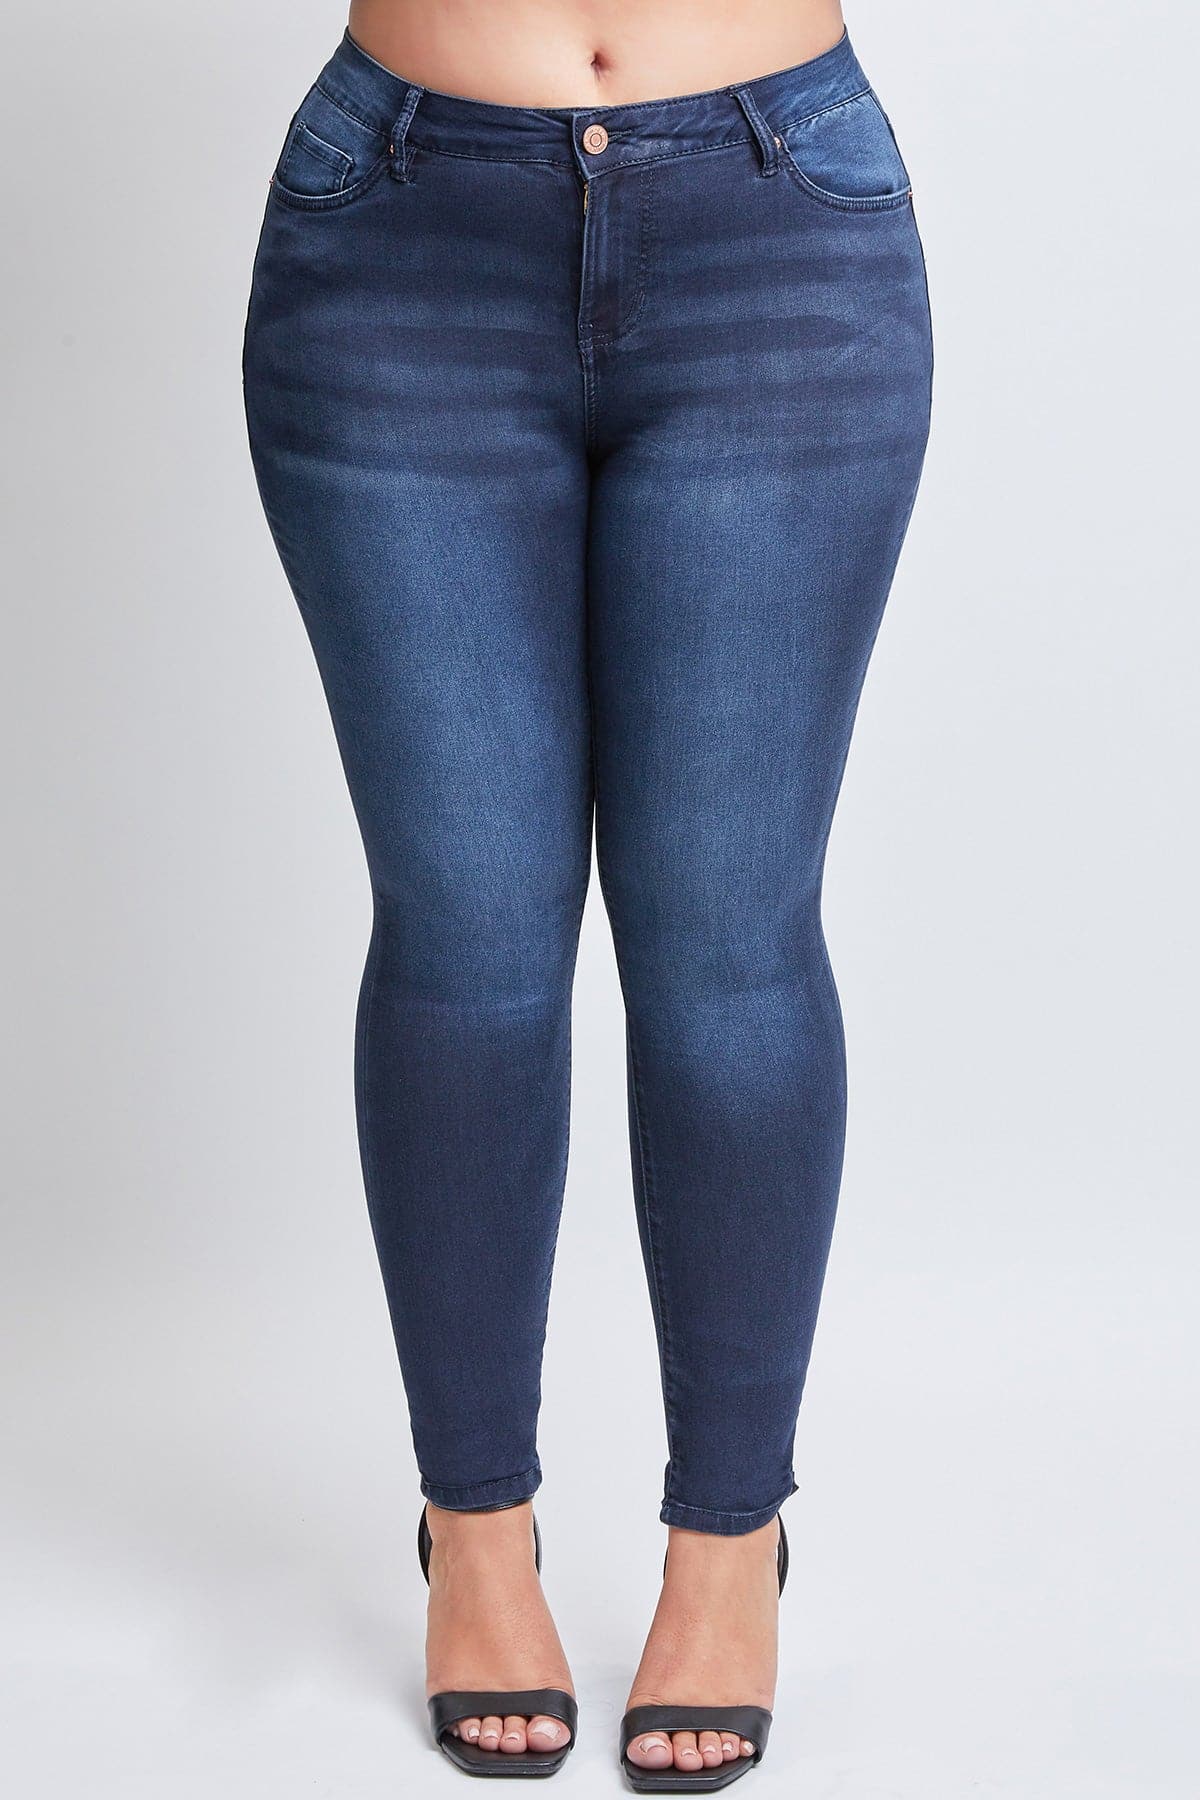 Women's Plus Size HyperDenim Super Stretchy Skinny Jeans